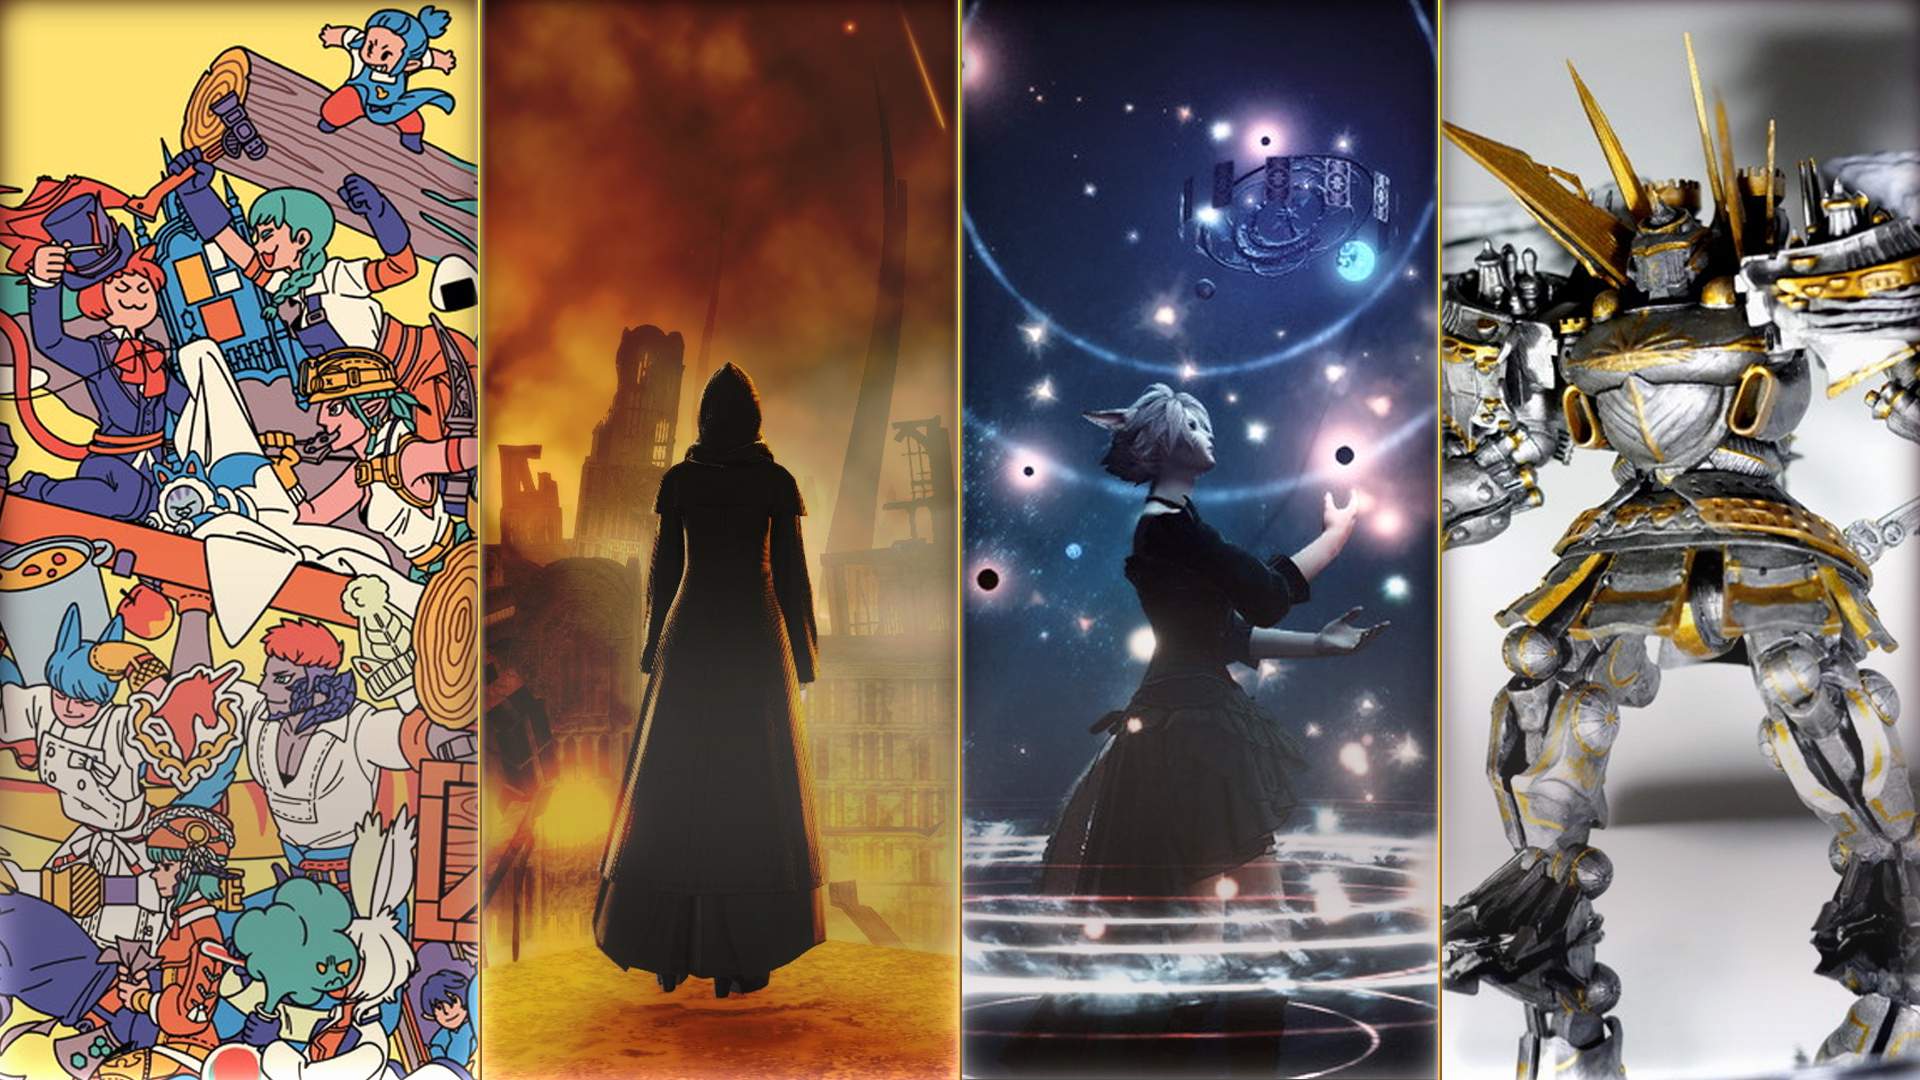 Vier Final Fantasy 14-Artworks verschiedener Medien. Eine Illustration zahlreicher Charaktere, zwei Screenshots und eine handgemachte Figur in silberner Rüstung sind zu sehen.